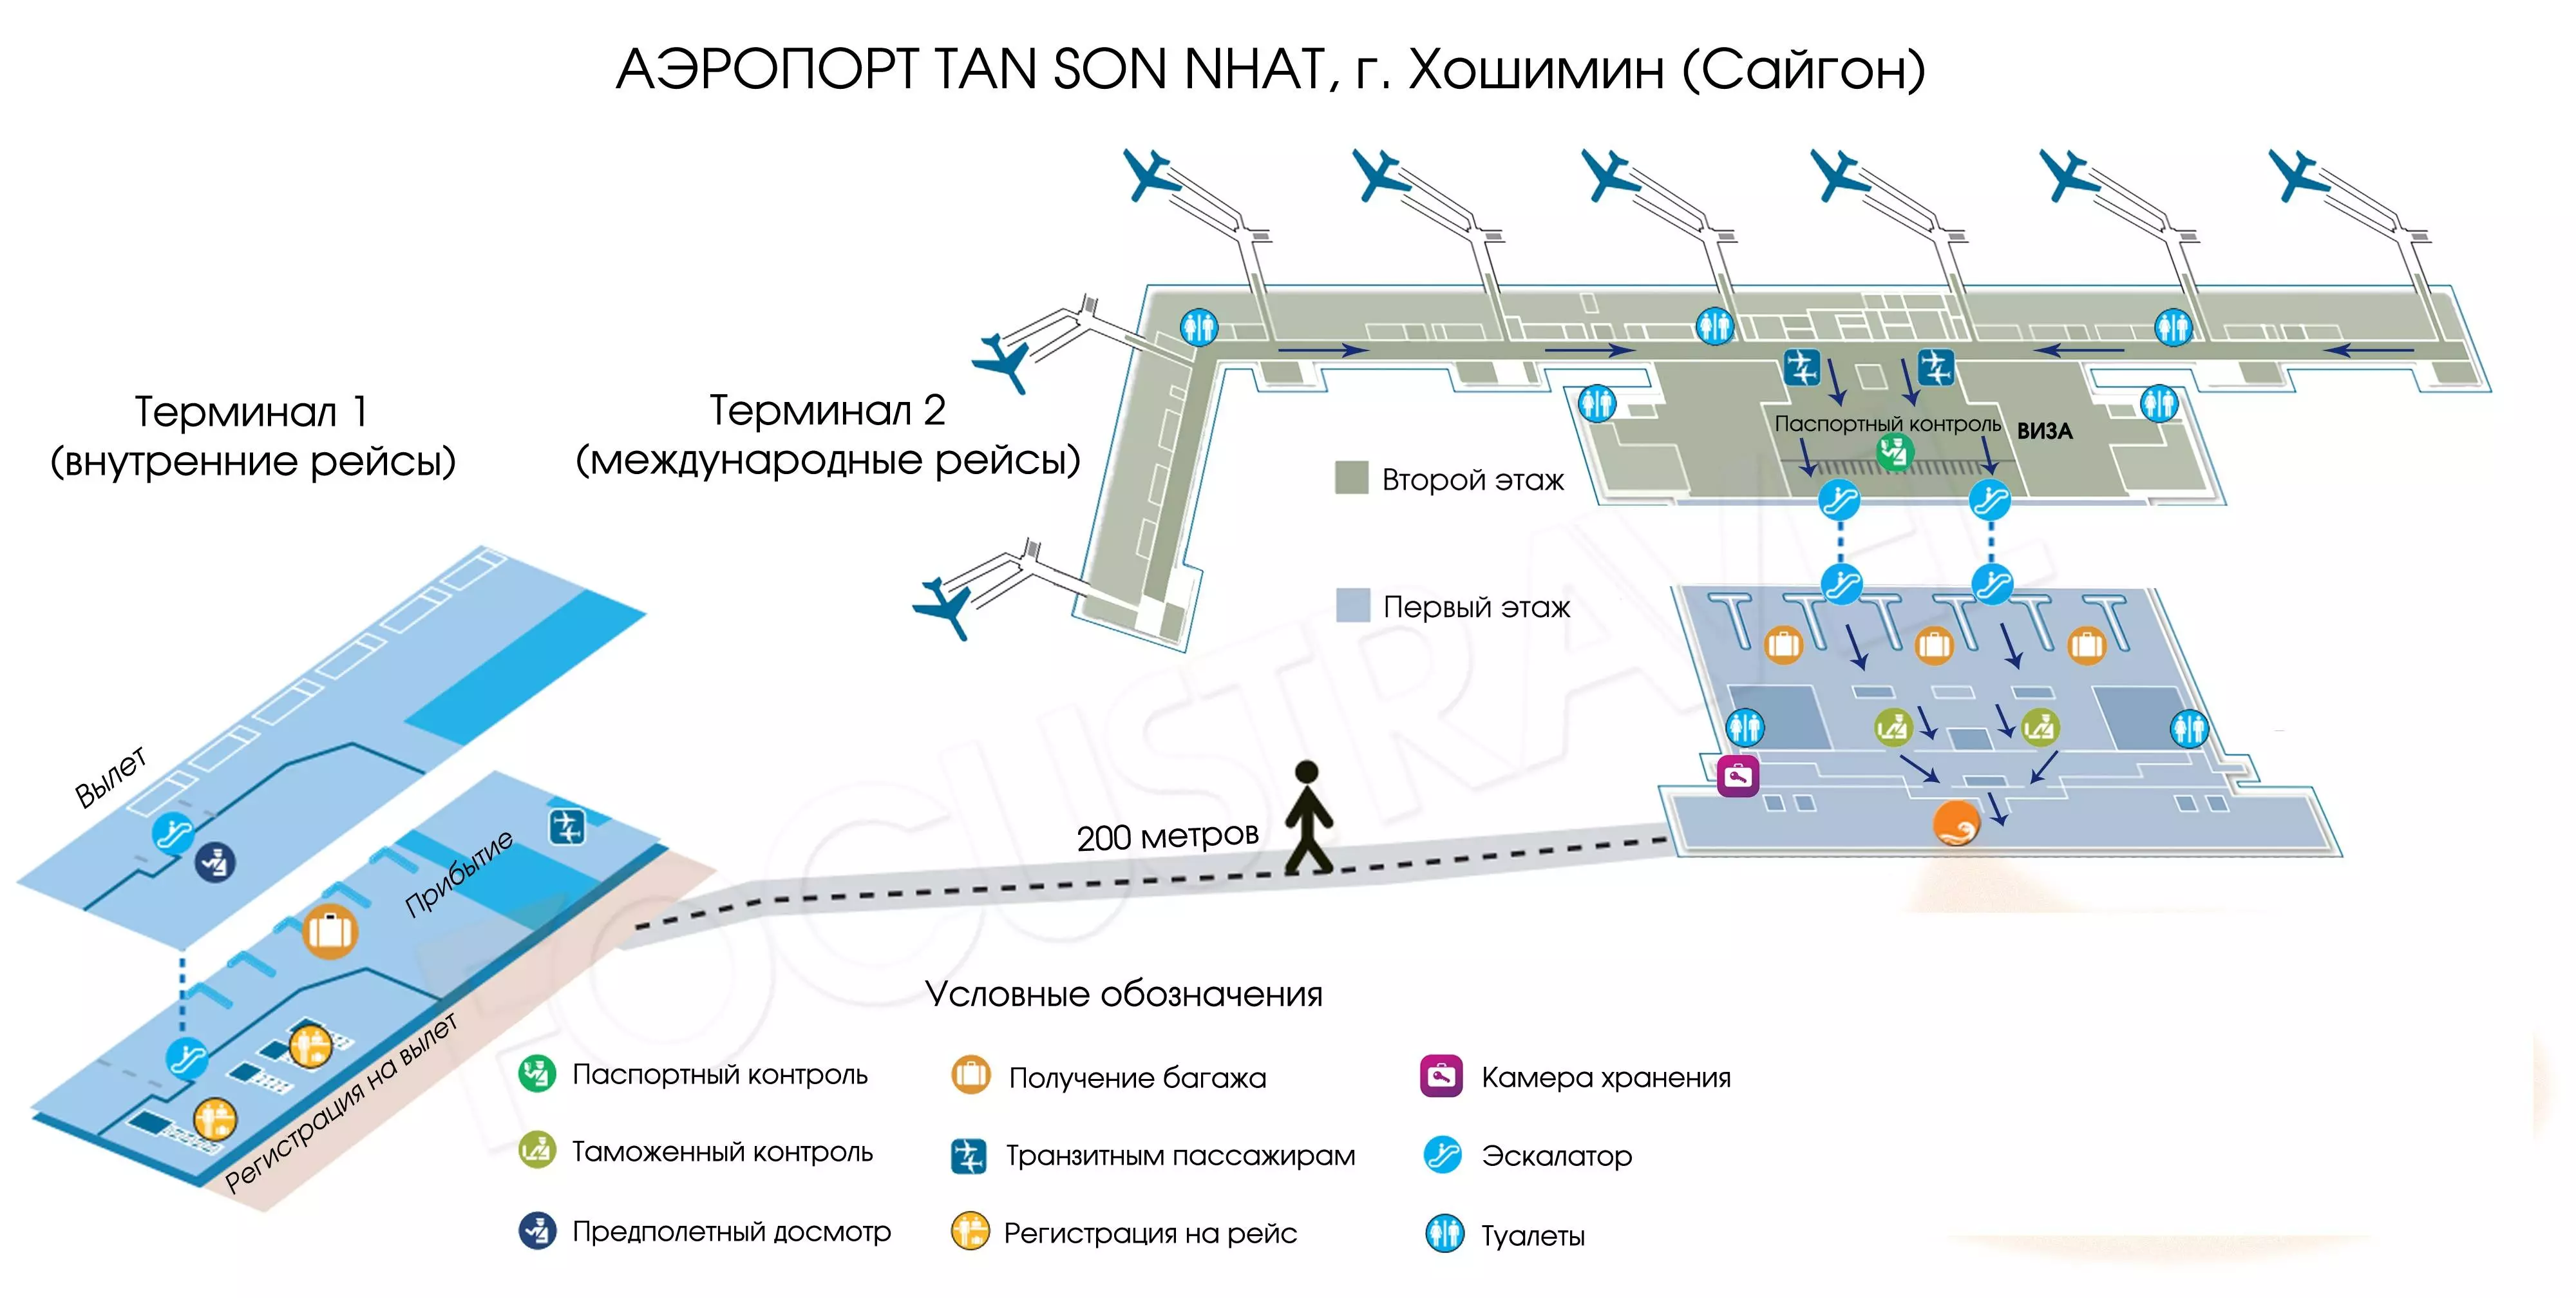 Об аэропорте липецка lpk - официальный сайт, расписание рейсов